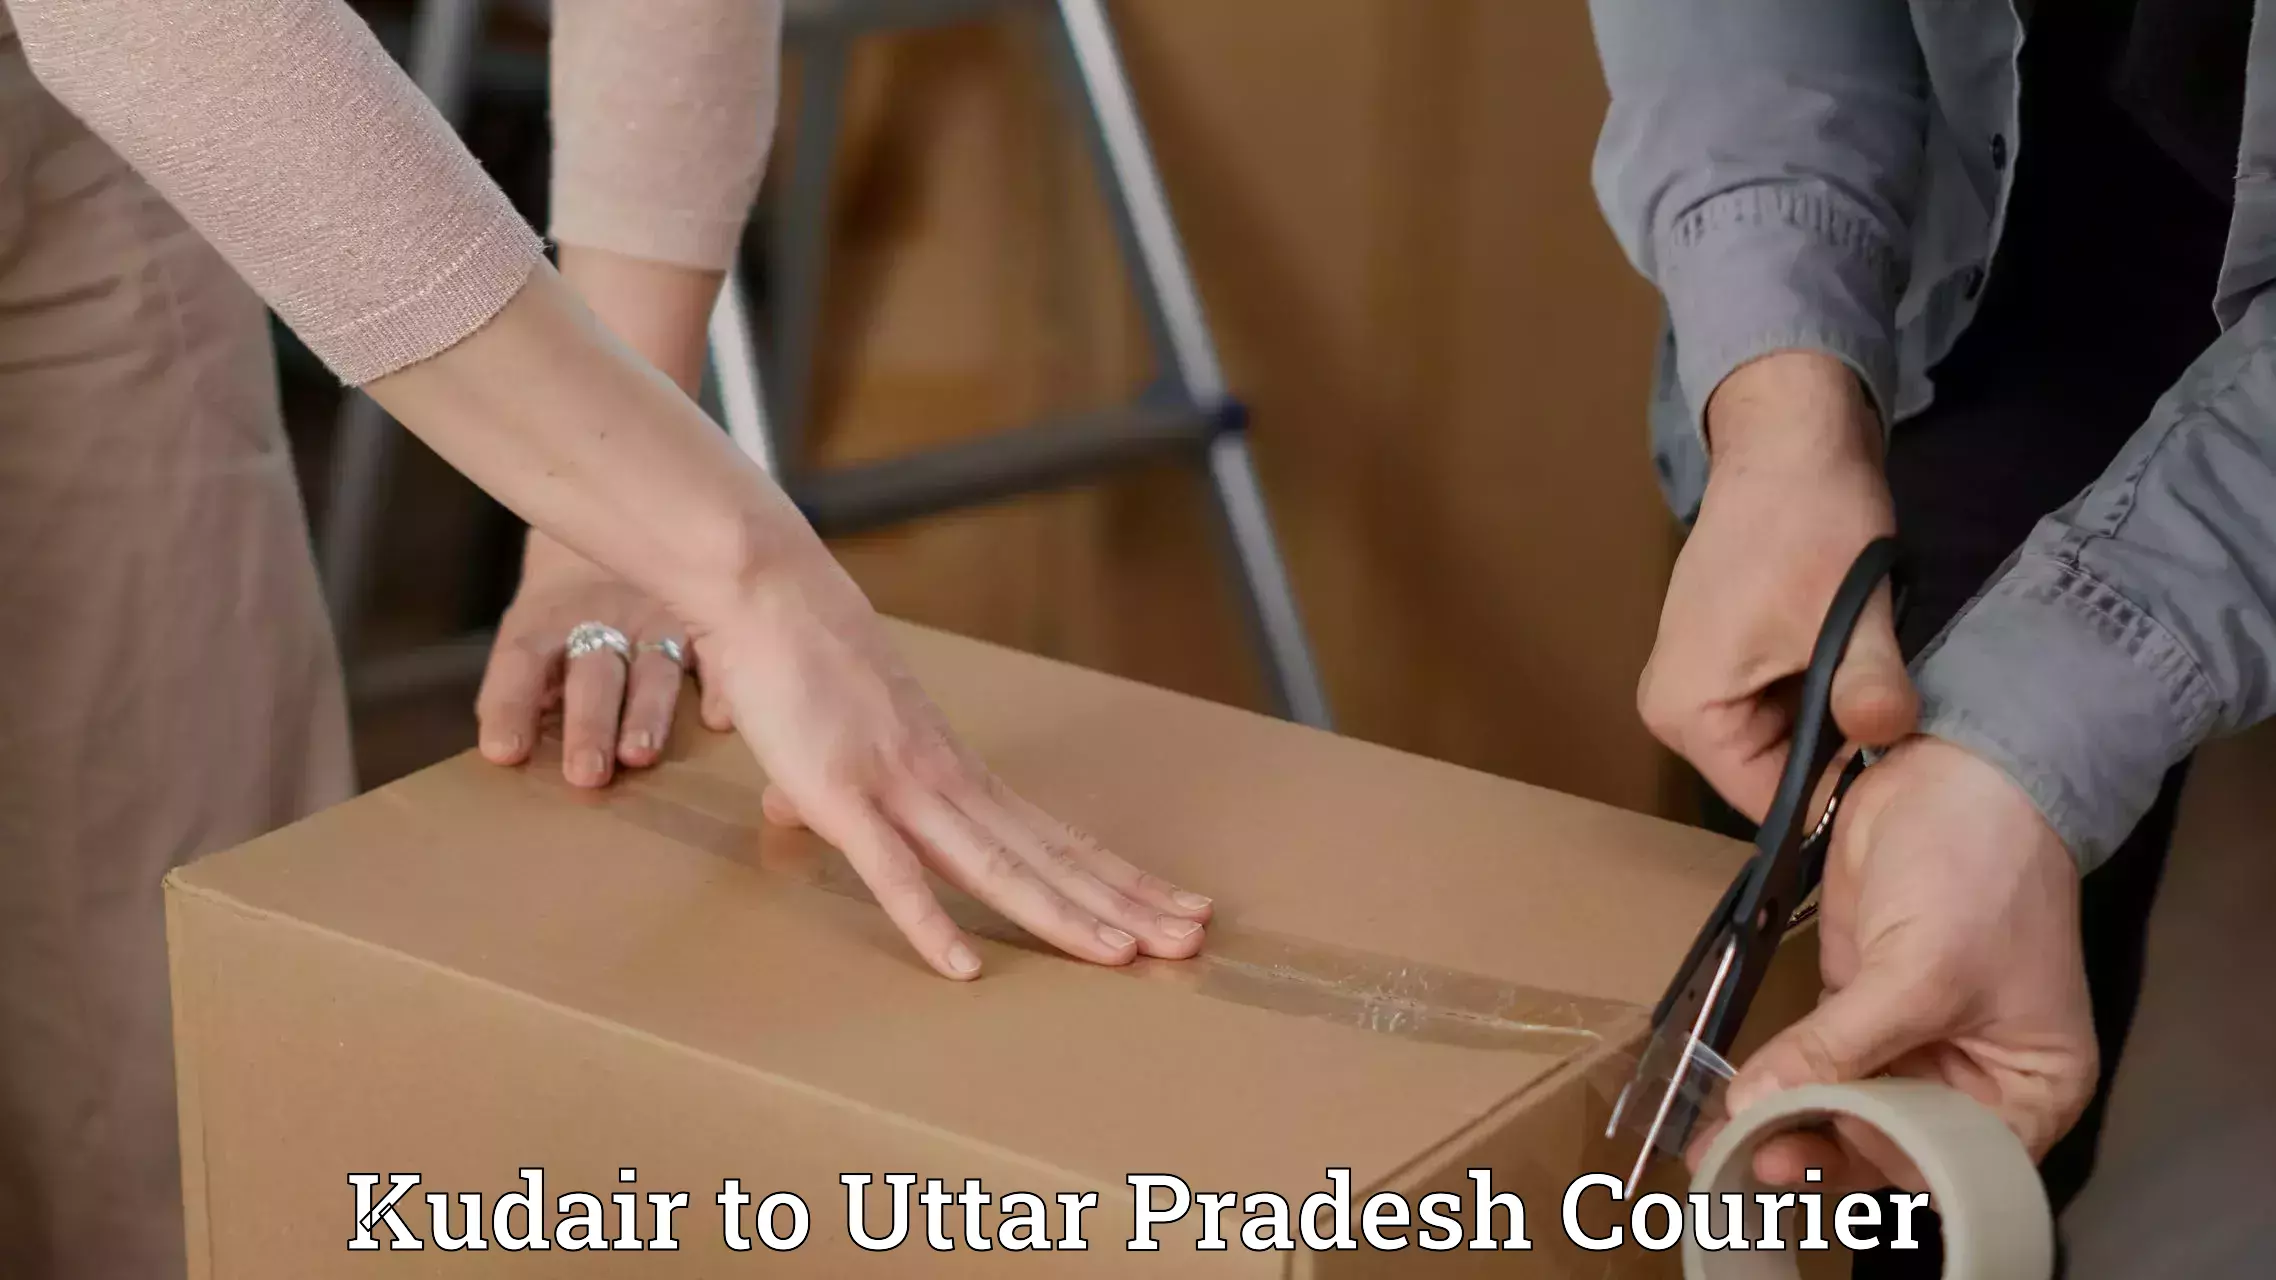 Delivery service partnership Kudair to Aligarh Muslim University